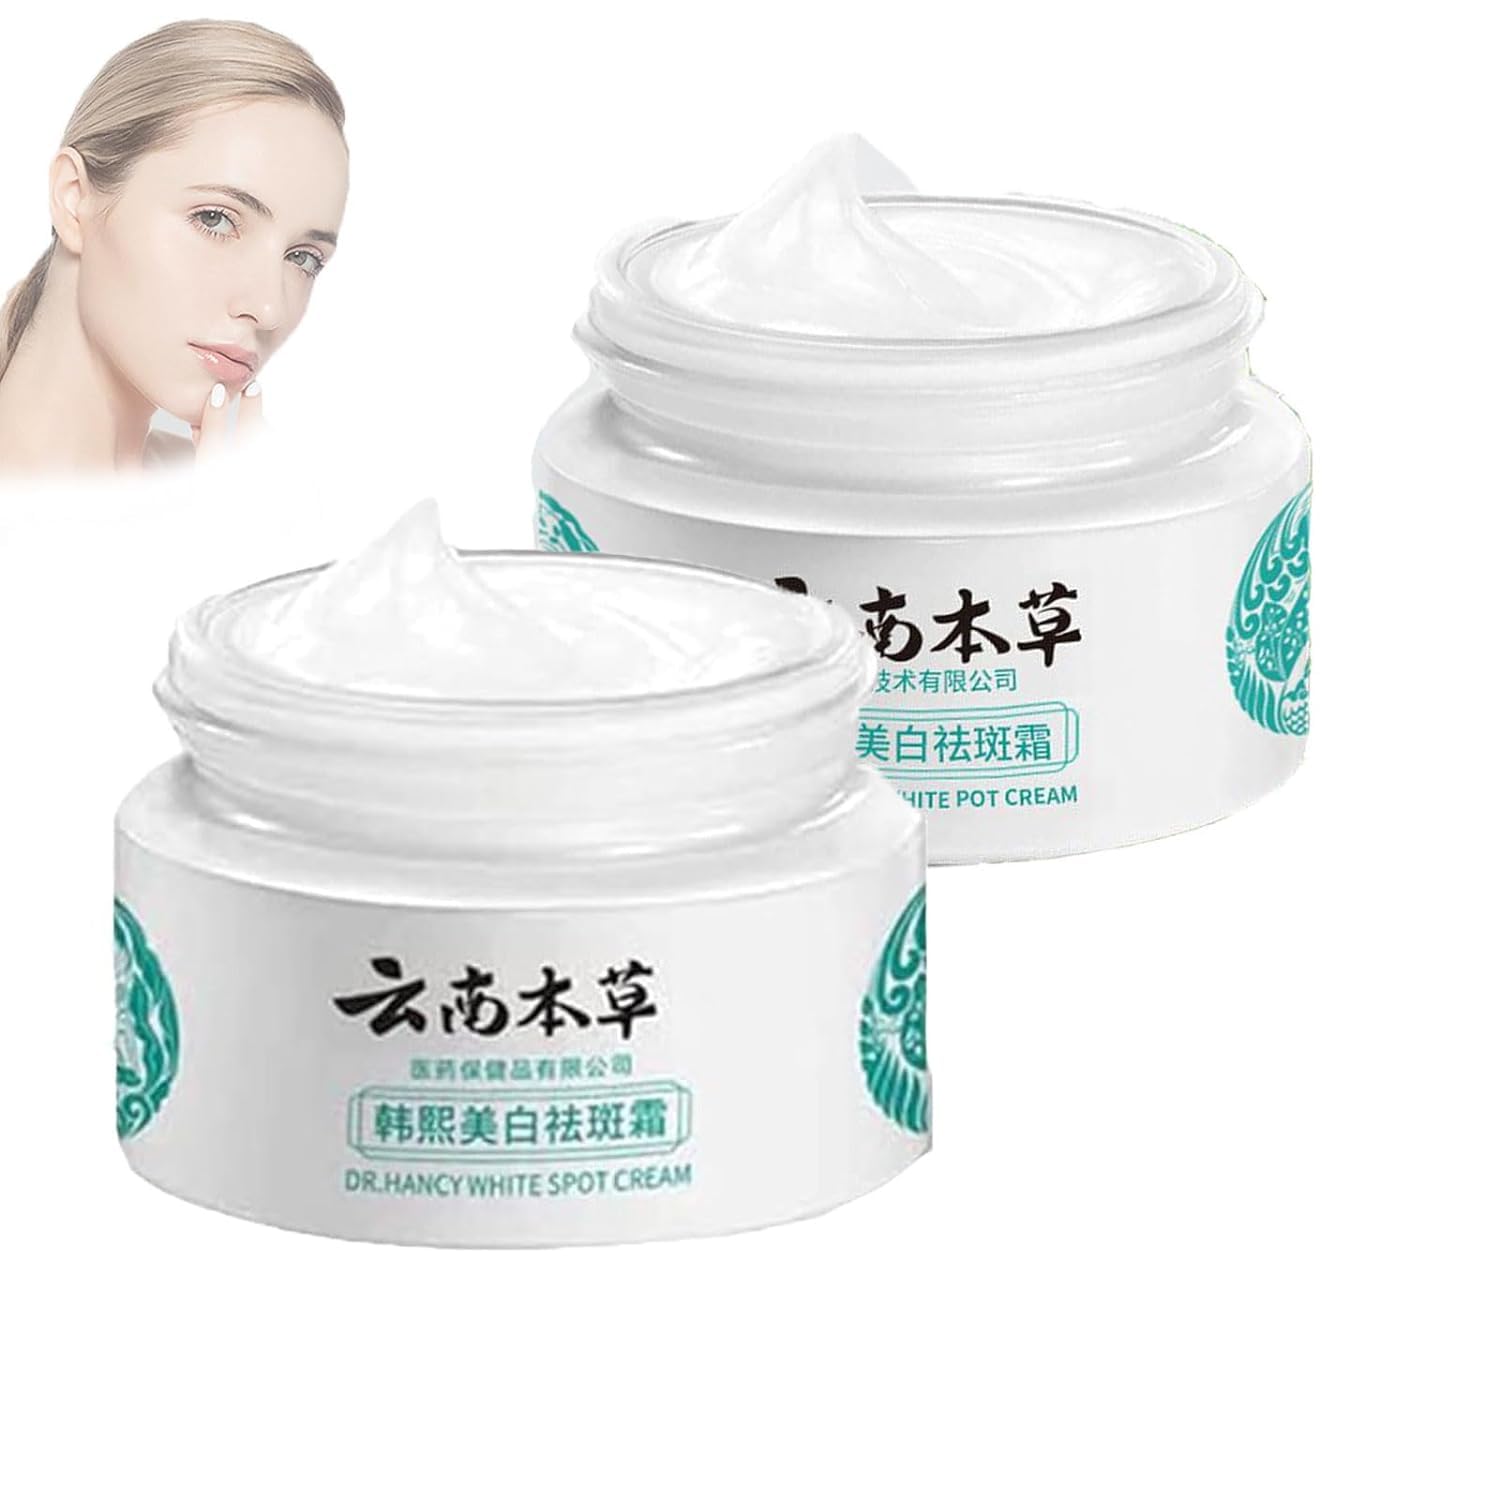 Saam Face Cream, Saam Renewal Face Cream, Japanese Melasma Cream, Saam Cosmetic Face Cream, Remove Melasma, Freckles, Dark Skin Saam Renewal Face Cream (2 pcs)